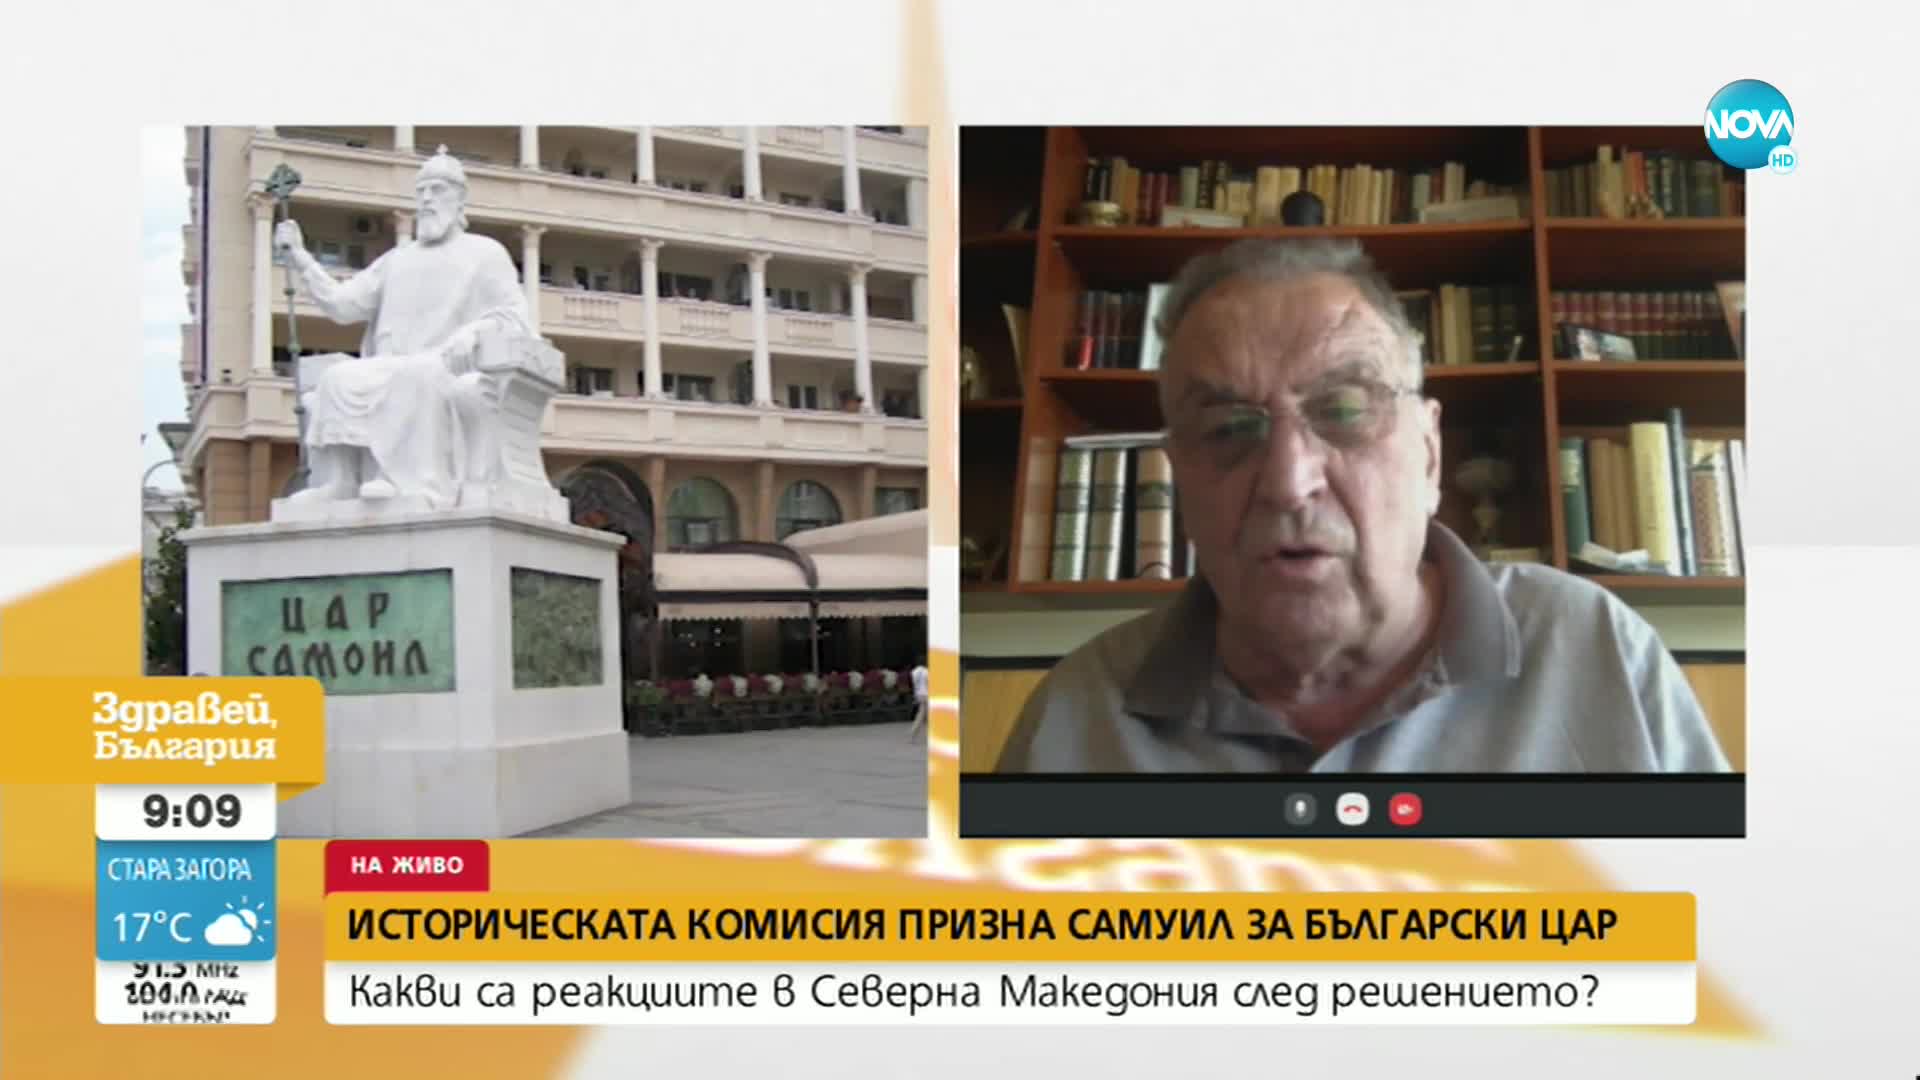 Какви са реакциите на РСМ, след като историческата комисия призна Самуил за български цар